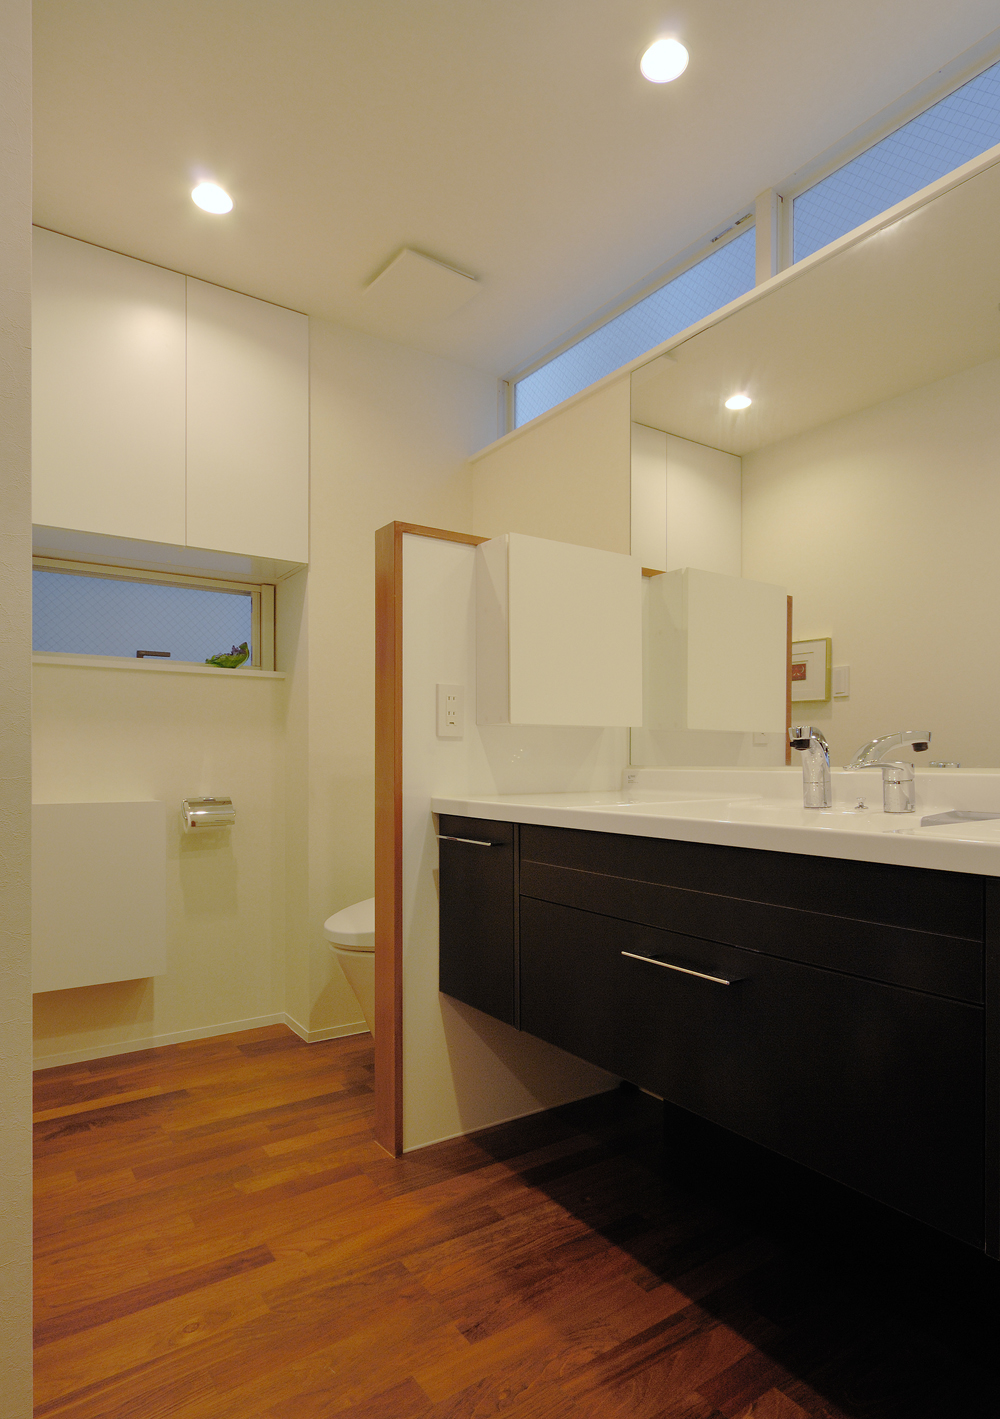 ユニバーサルデザインを意識した センスのよいトイレ 洗面所 Fevecasa フェブカーサ